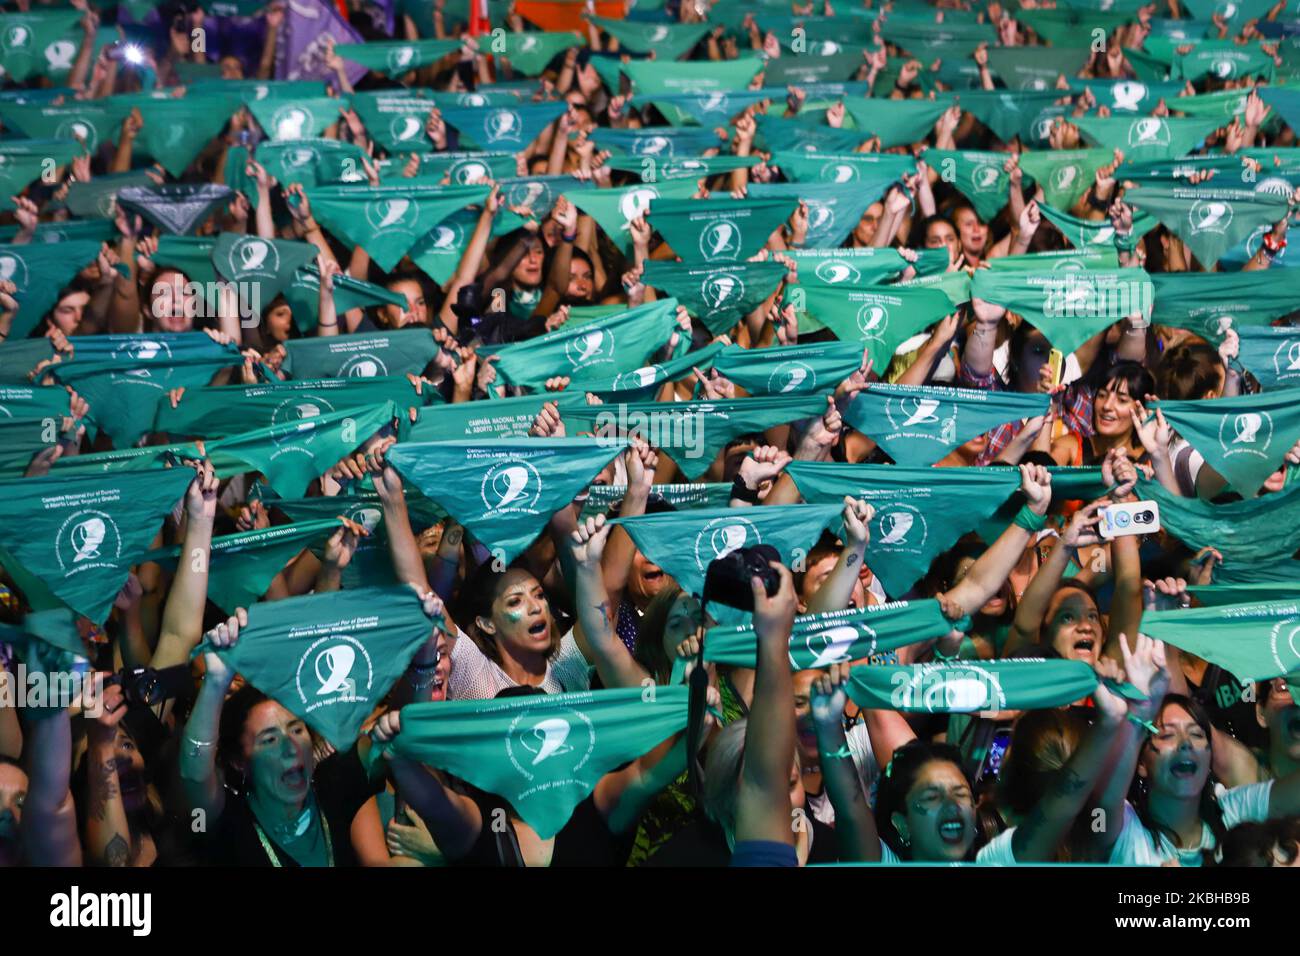 Pro-Abtreibungsaktivisten heben ihre Taschentücher während einer Demonstration als Teil eines grünen 'pañuelazo', um das Recht auf legale, sichere und freie Abtreibung außerhalb des Nationalkongresses zu fordern. Am 19. Februar 2020 in Buenos Aires, Argentinien. (Foto von Matías Baglietto/NurPhoto) Stockfoto